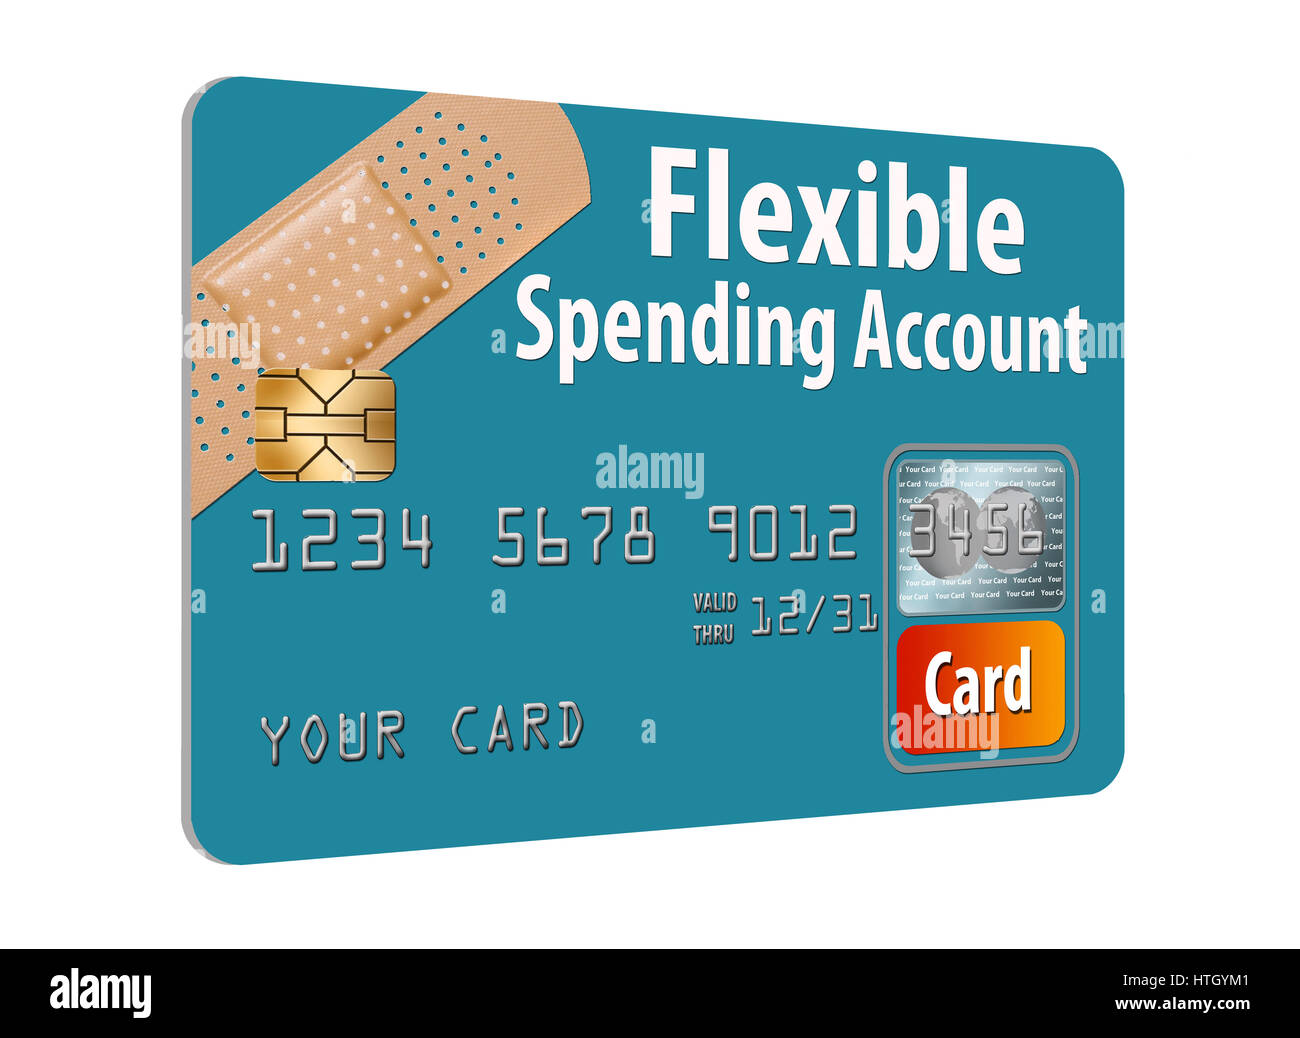 what is ricoh flex credit